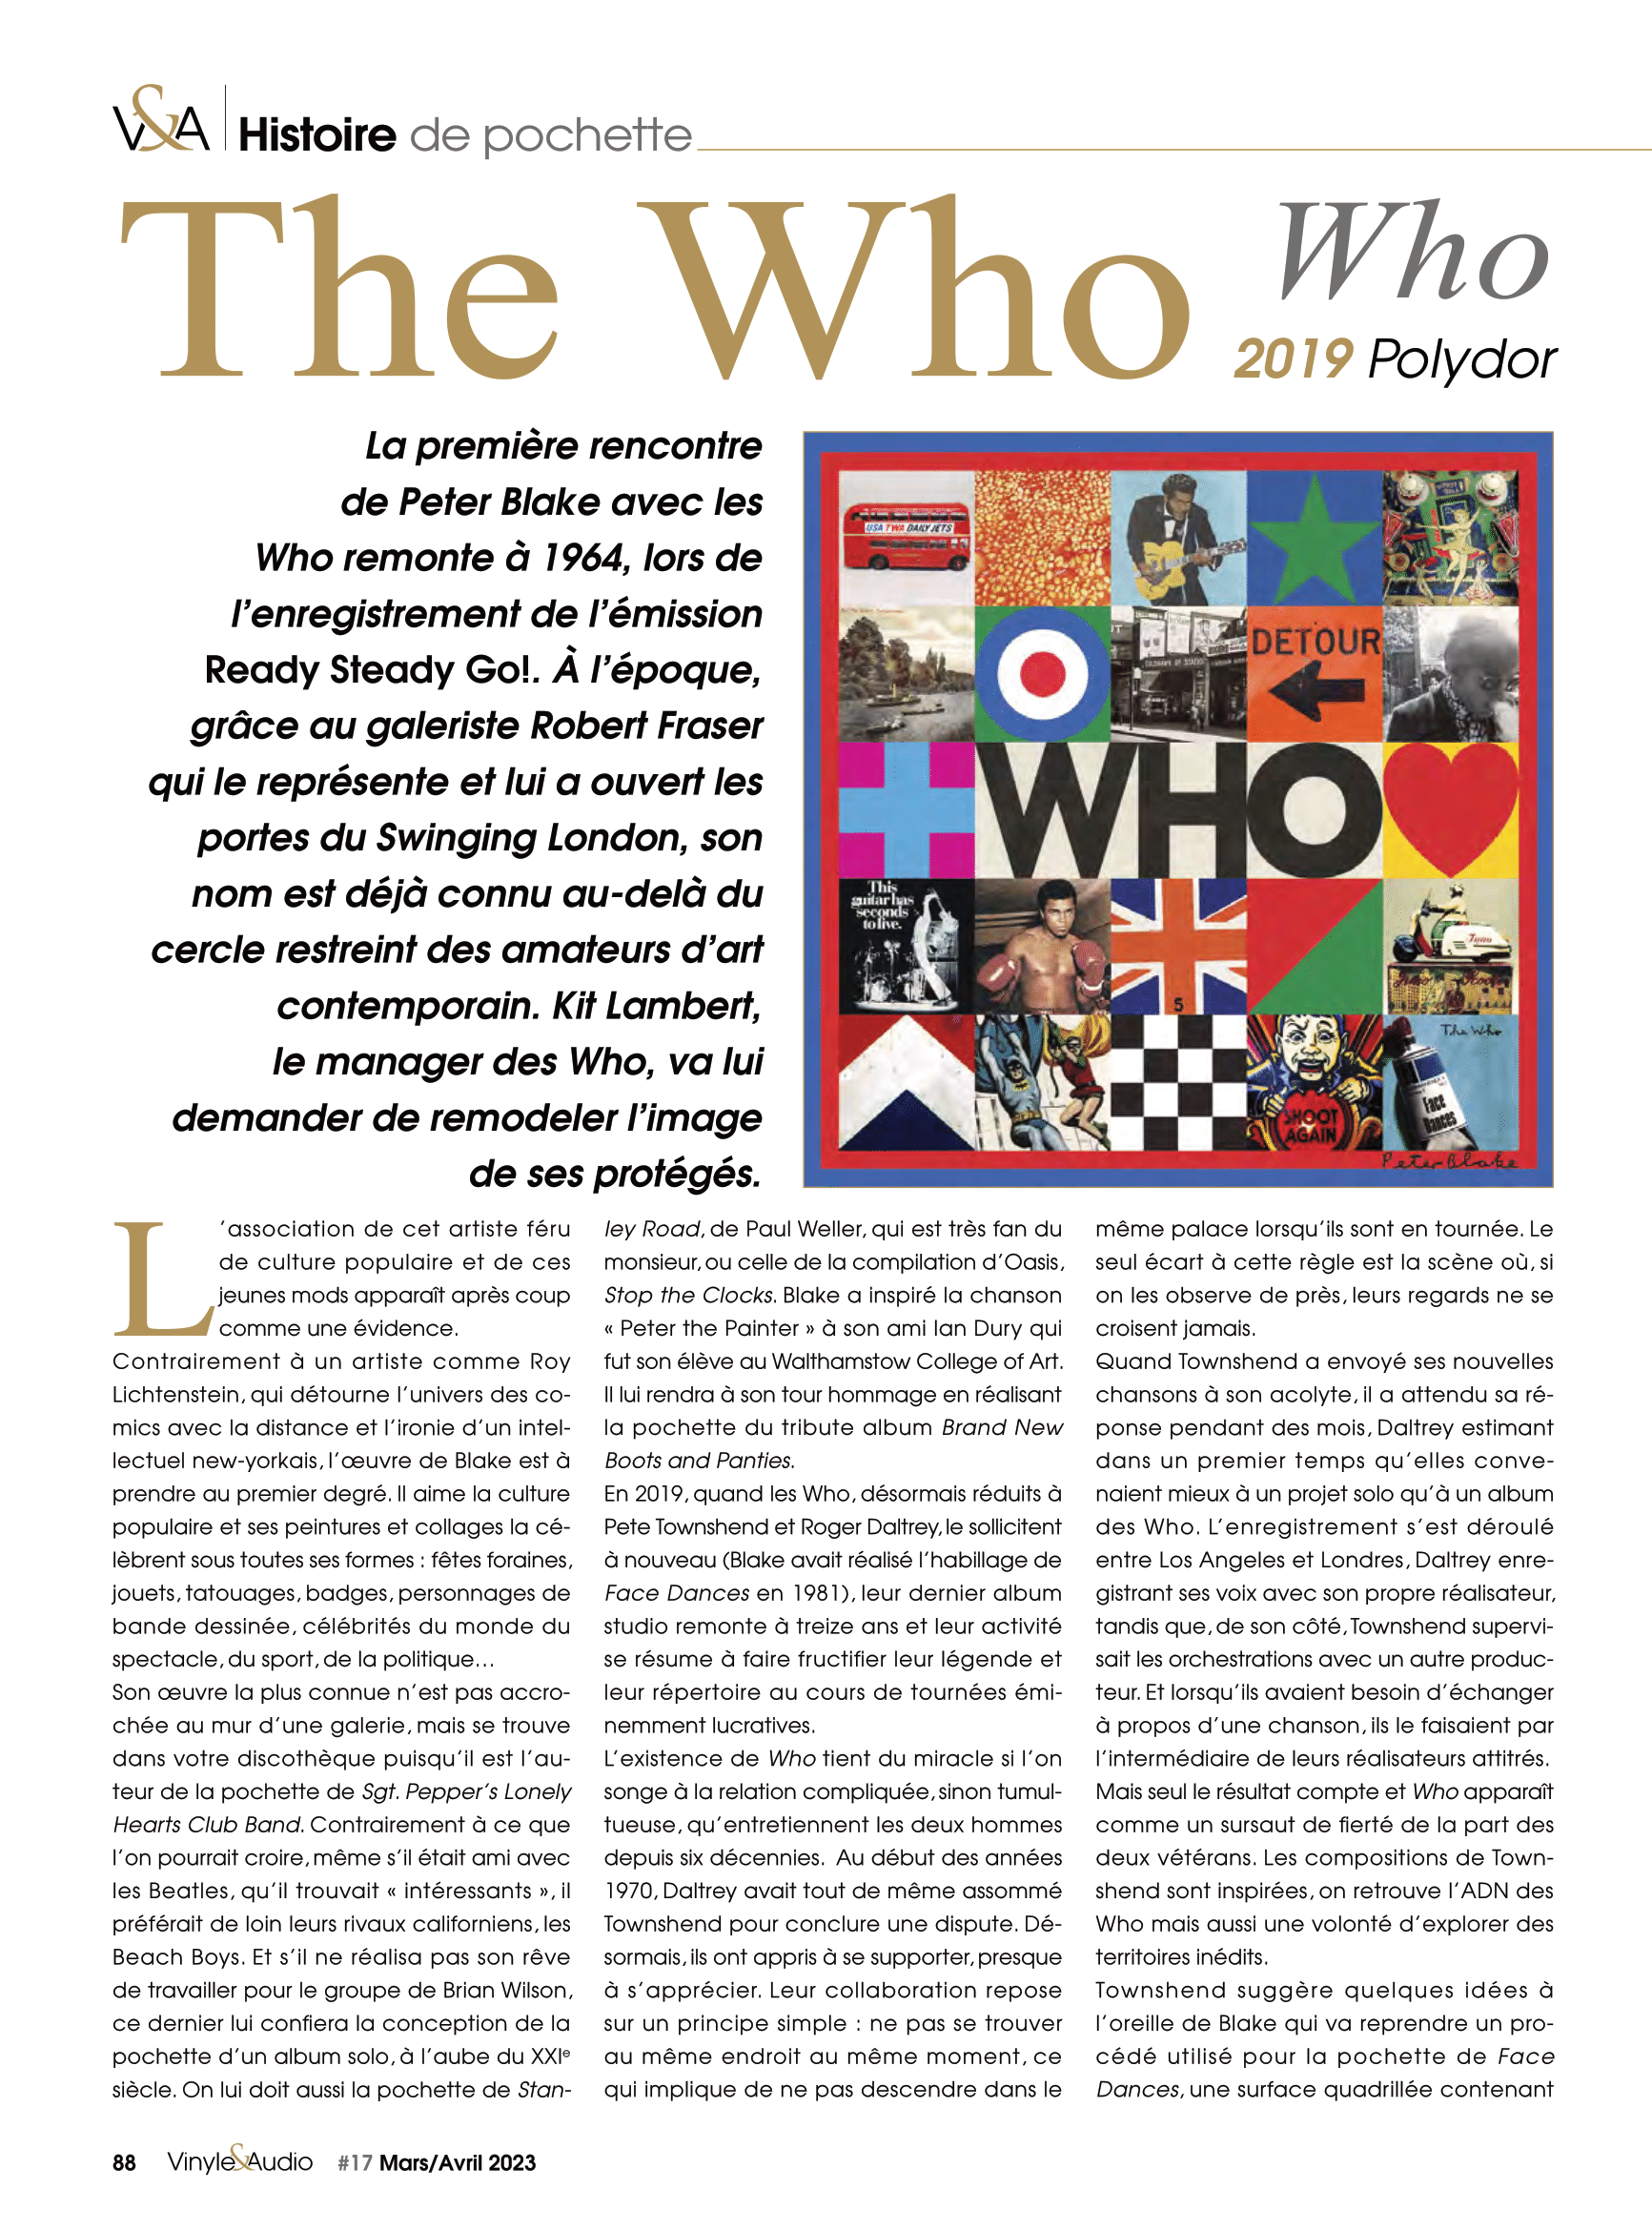 Vinyle & Audio n°17 : histoire de pochette avec les Who